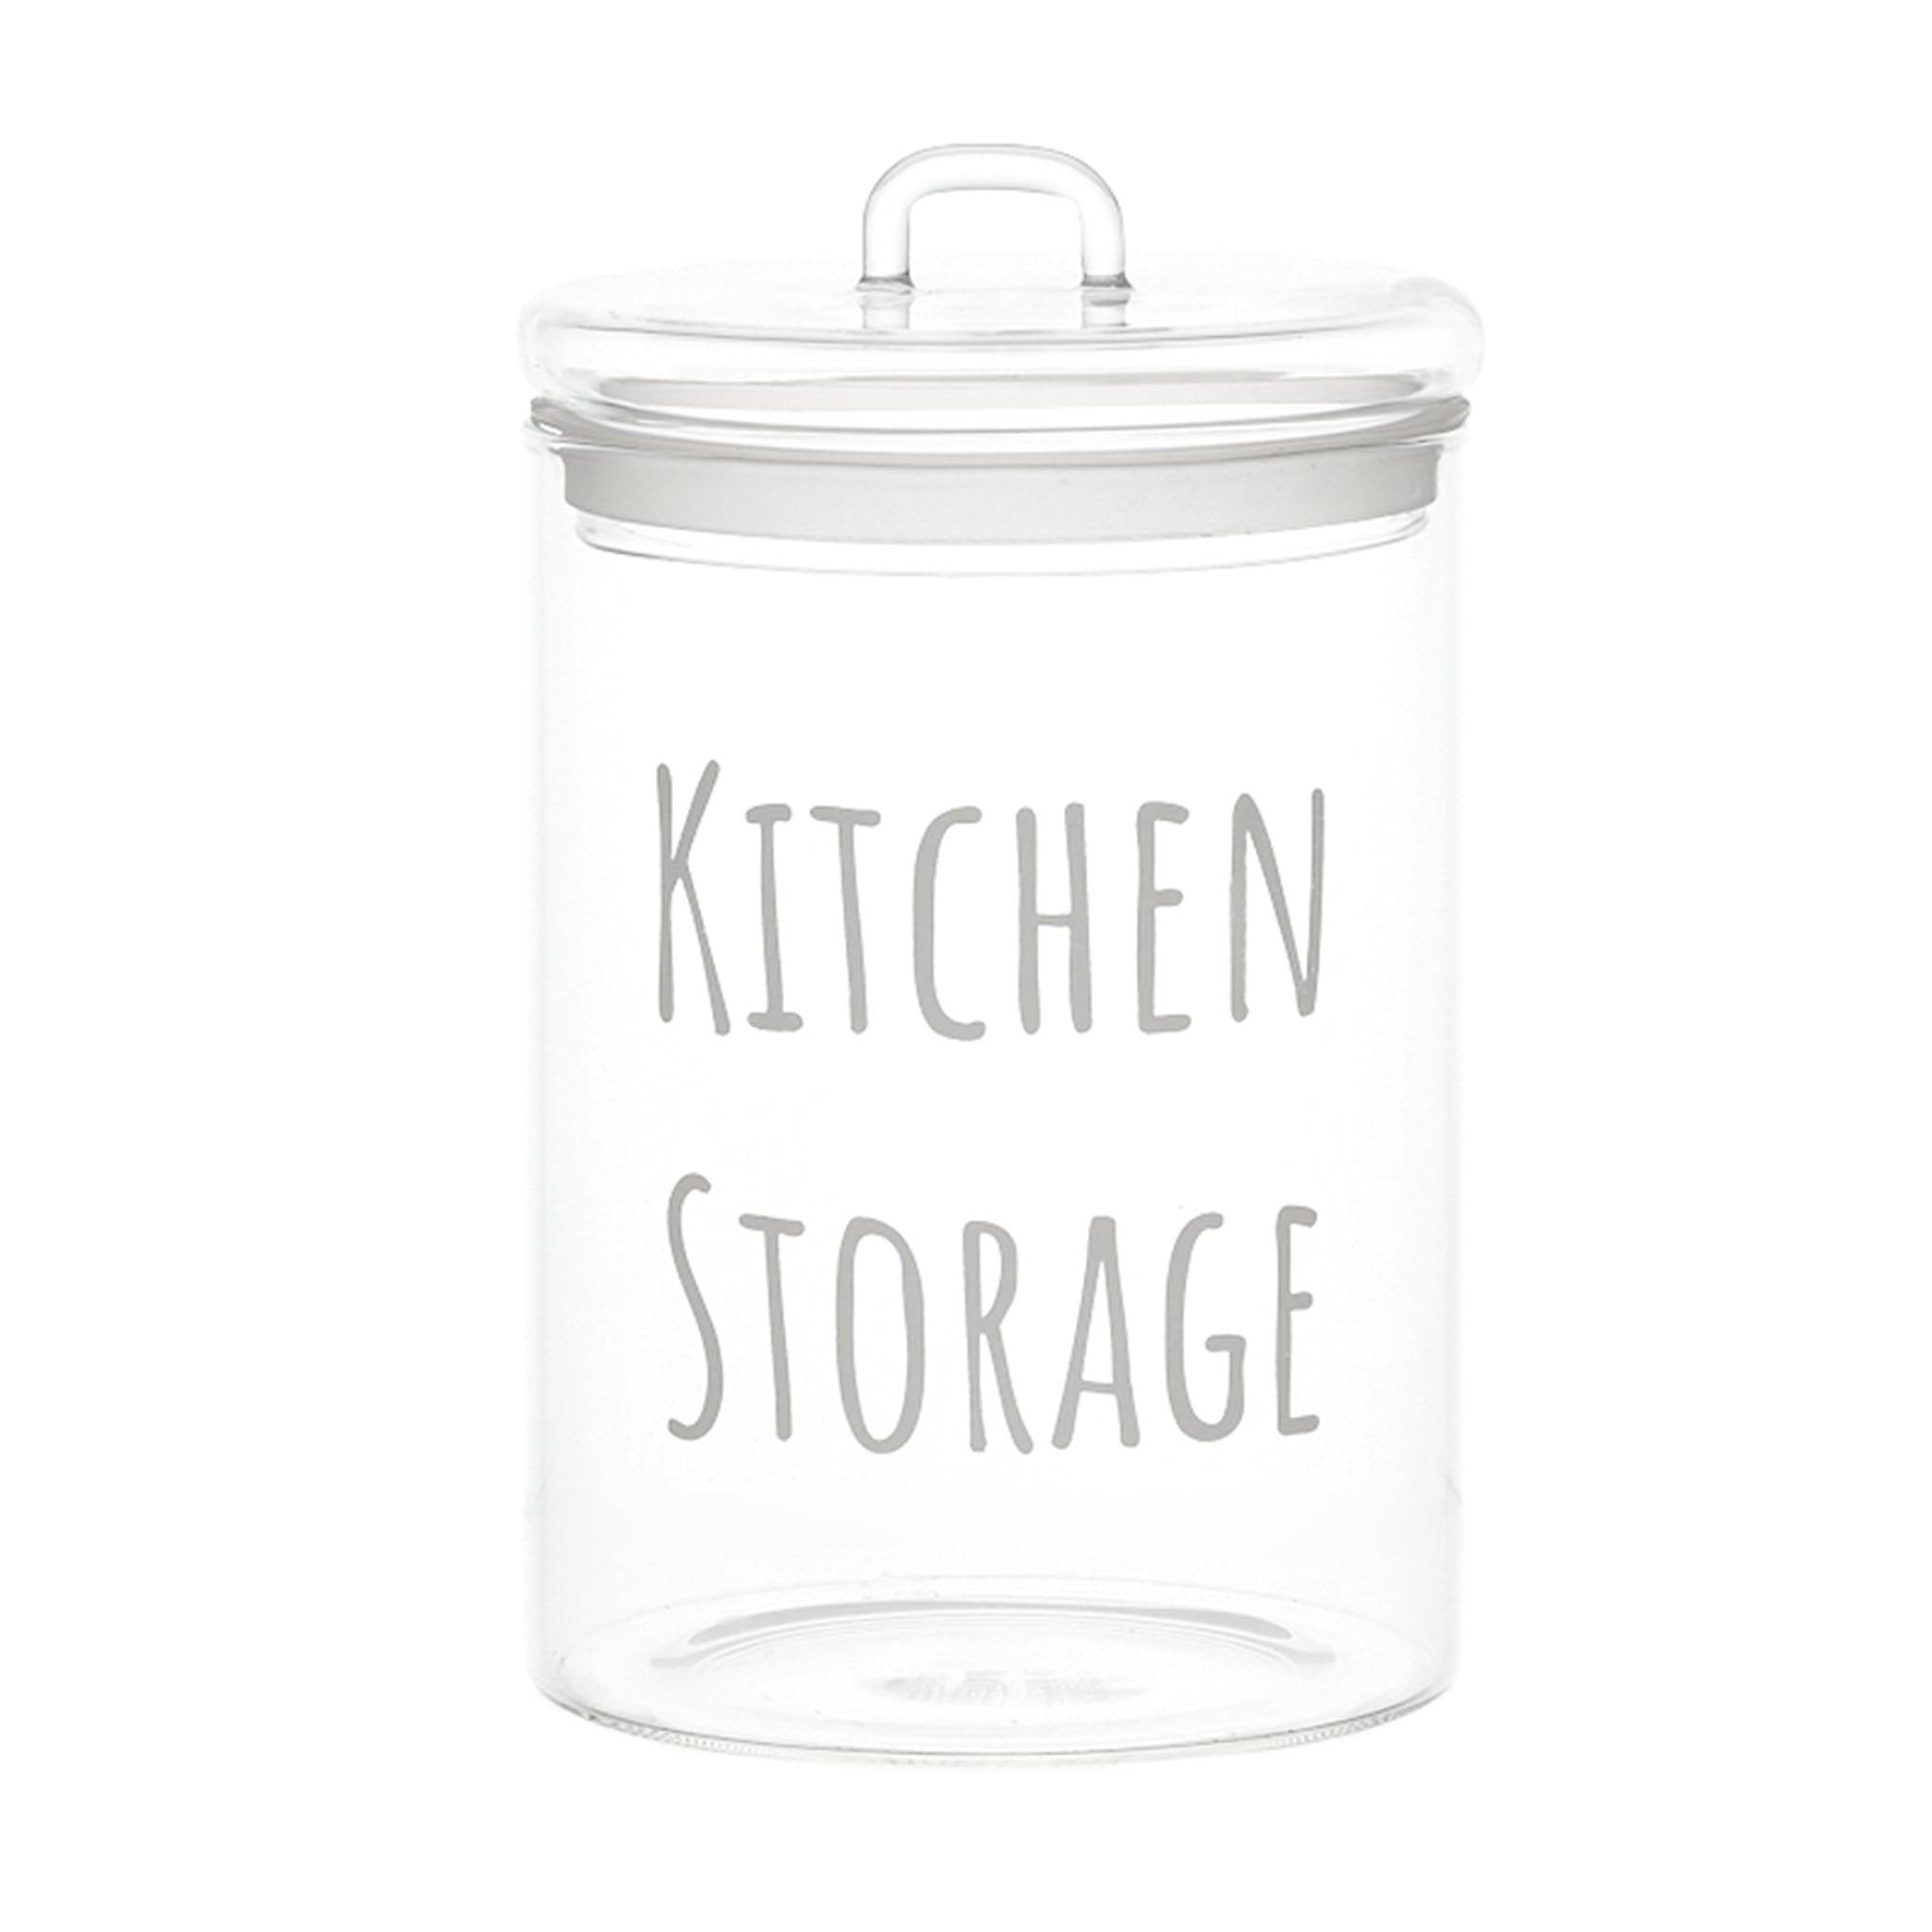 Kitchen storage white jar